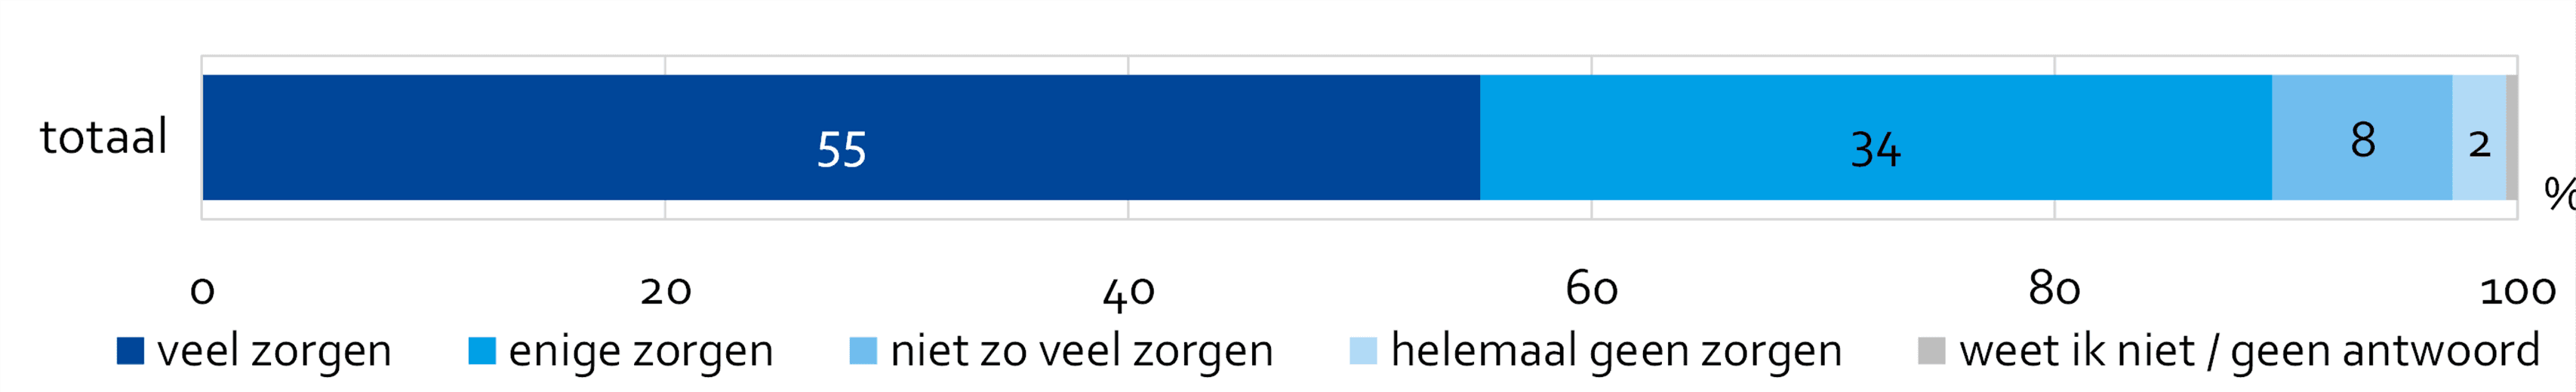 Aandeel Amsterdammers dat zich zorgen maakt over zaken zoals de vervuiling van de aarde, uitputting van grondstoffen en uitstoot van broeikasgassen (CO2). Te zien is dat 55% zich hier veel zorgen om maakt.